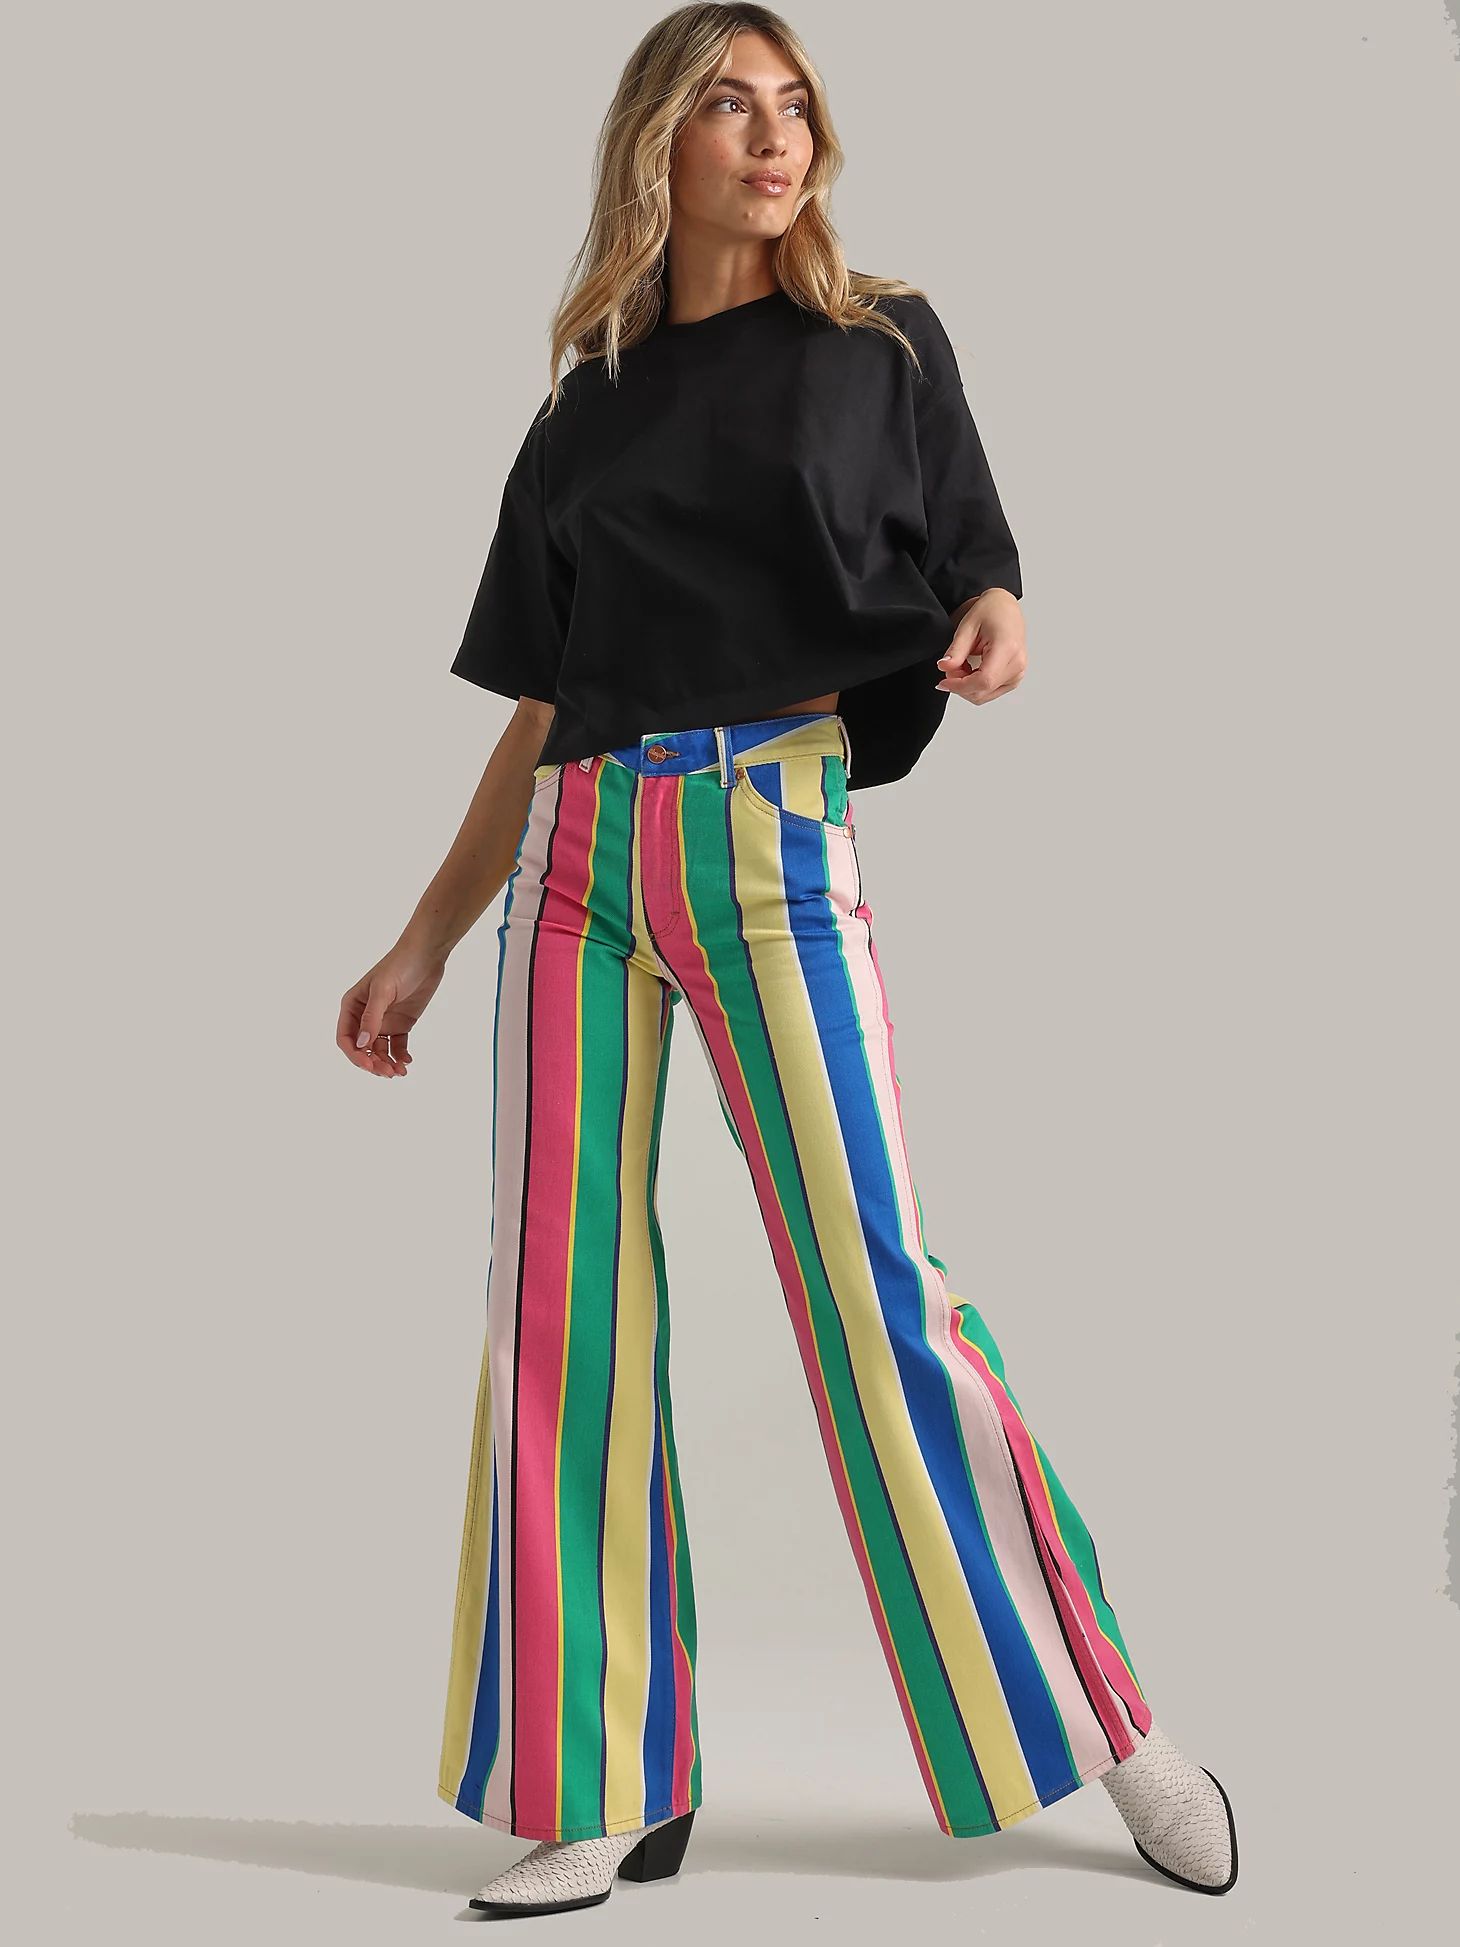 Women's Wrangler® Laser Striped Wanderer 622 High Rise Flare Jean in Rainbow Pop | Wrangler